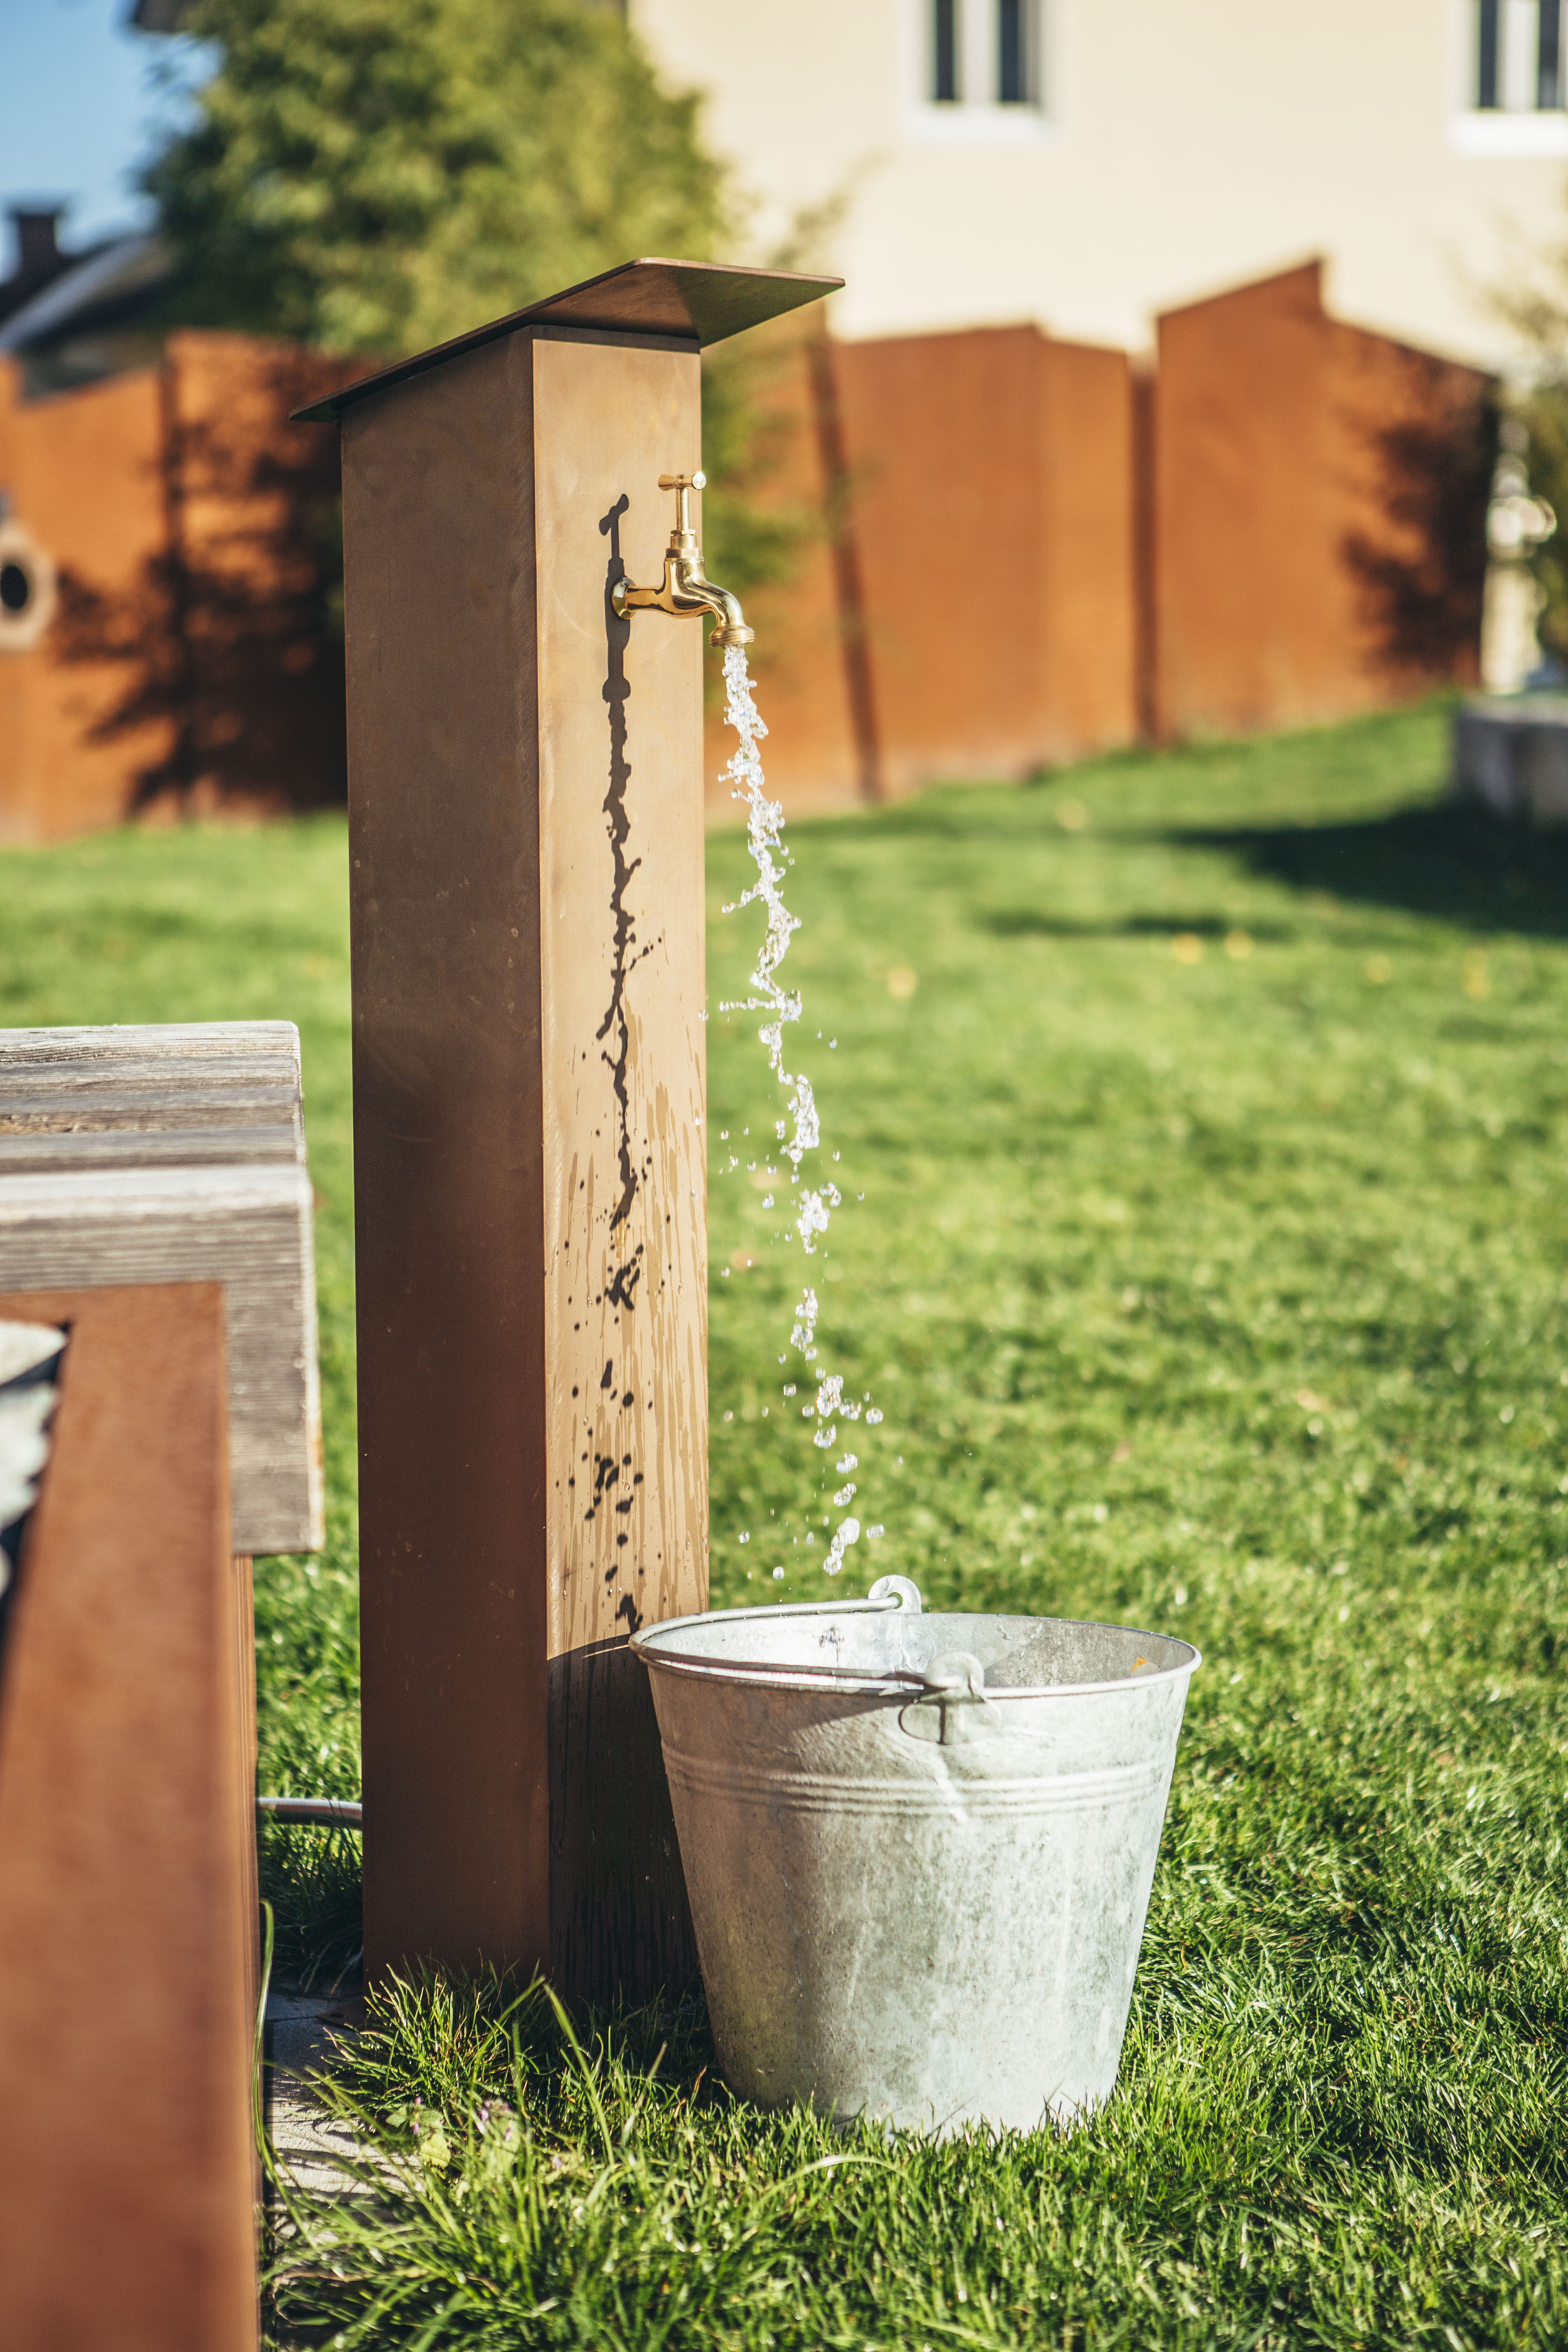 Edelrost Wasserzapfsäule, eine charmante Rostsäule mit integriertem Wasserhahn für unkomplizierte Gartenbewässerung - praktische u dekorative Wasserversorgung